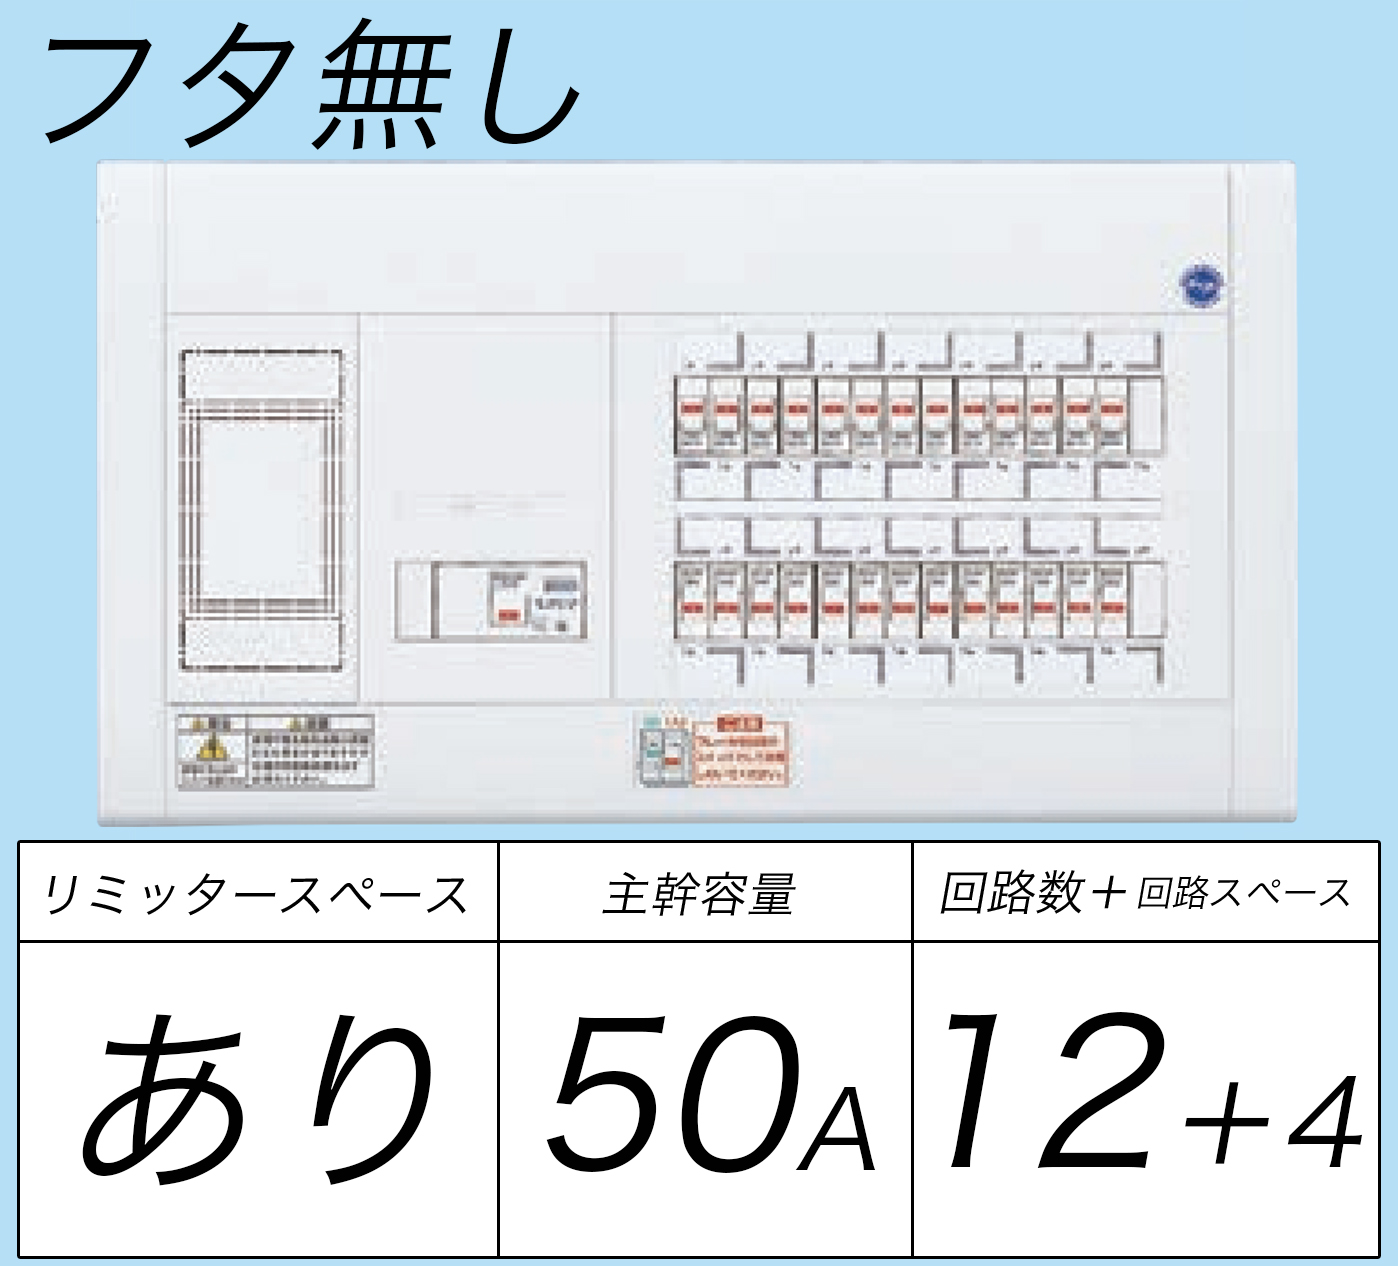 アウトレット☆送料無料 パナソニック BQR35244 住宅分電盤 コスモパネル スタンダード リミッタースペース付 24 50A 